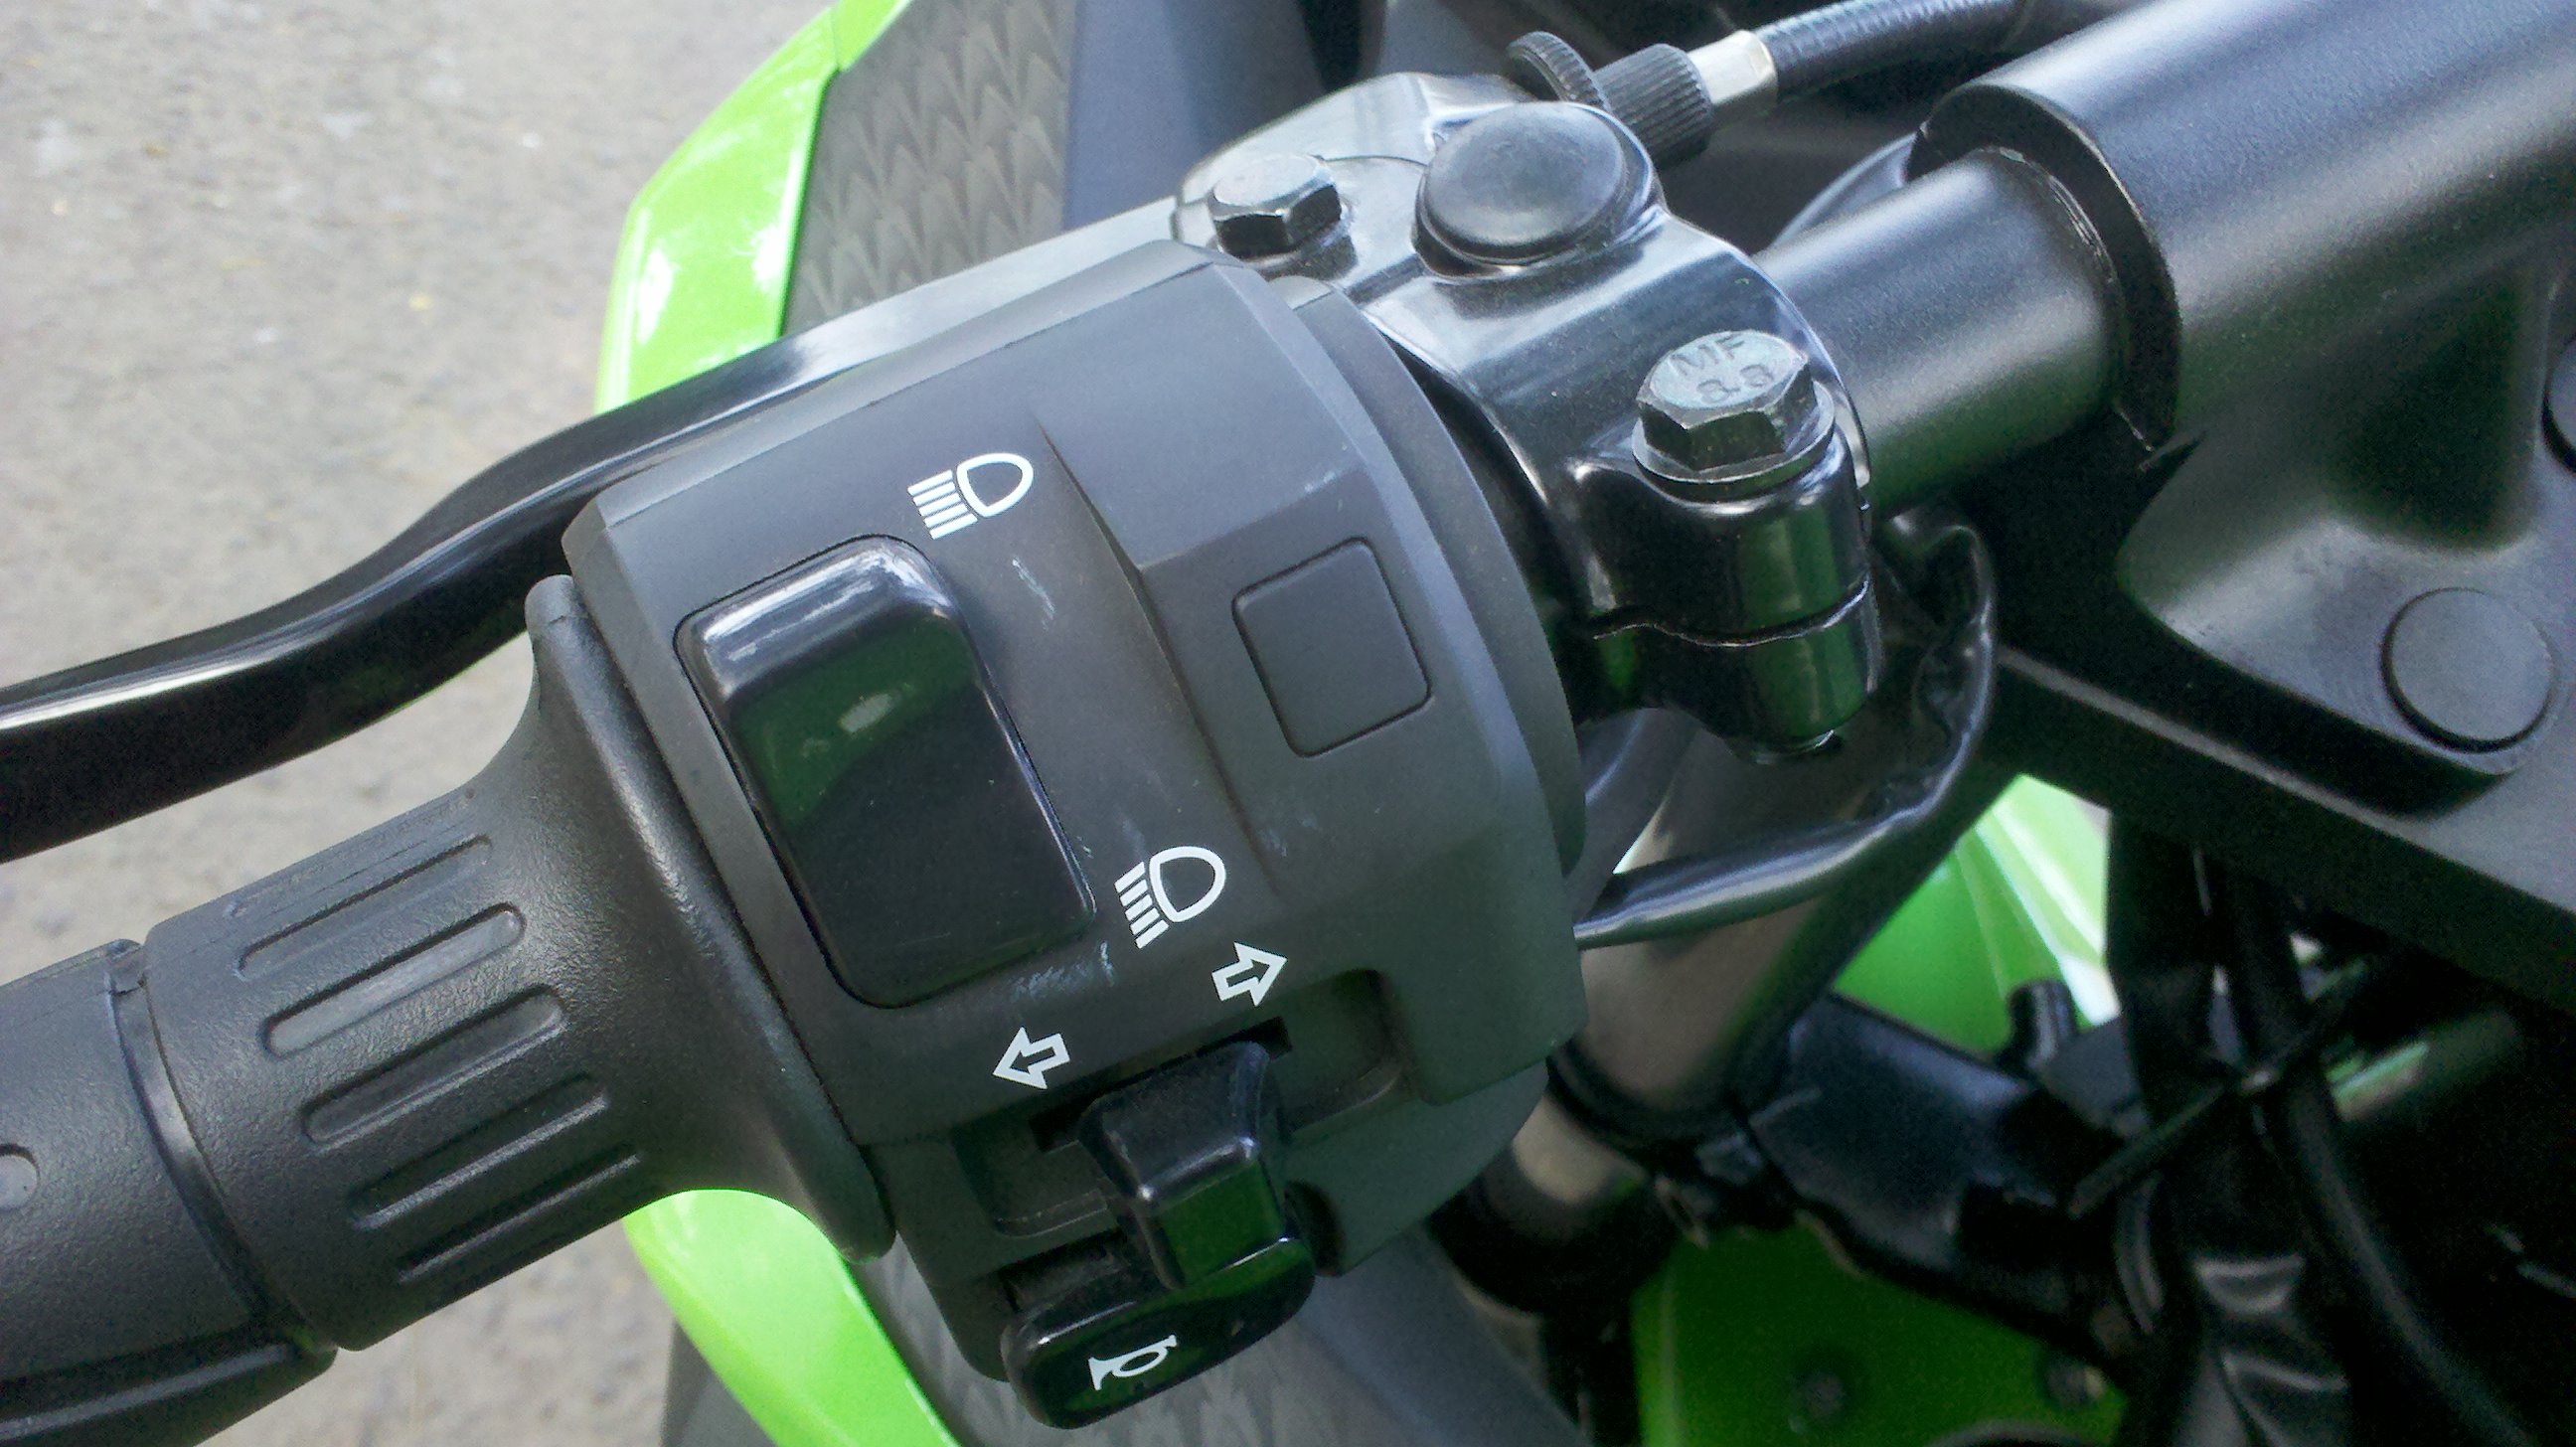 2013 Kawasaki Ninja 250 Fi Riding Impression Part 1 First Look